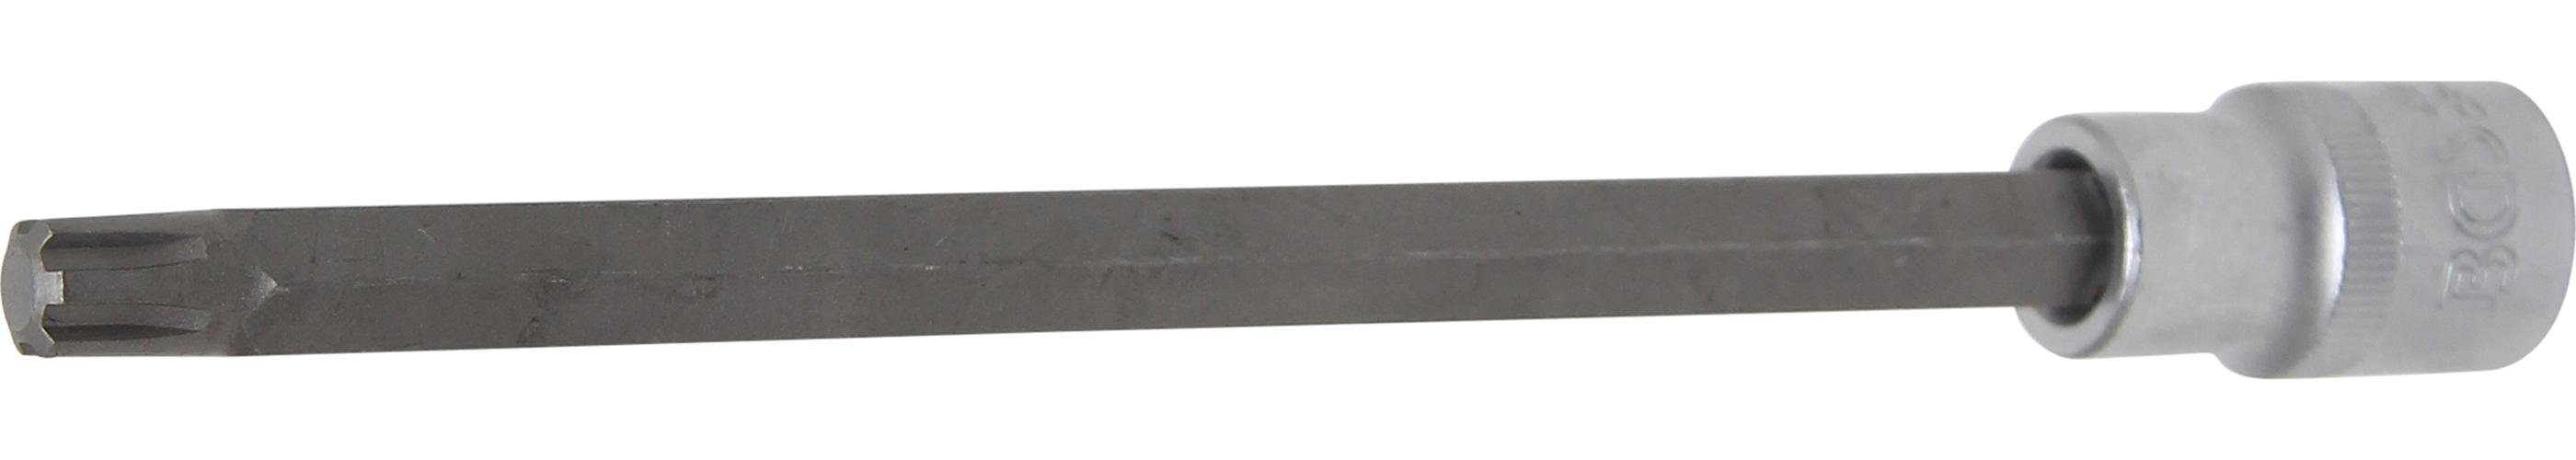 technic RIBE) Bit-Schraubendreher mm Keil-Profil Antrieb mm, 200 (1/2), M10 (für Bit-Einsatz, BGS Länge 12,5 Innenvierkant